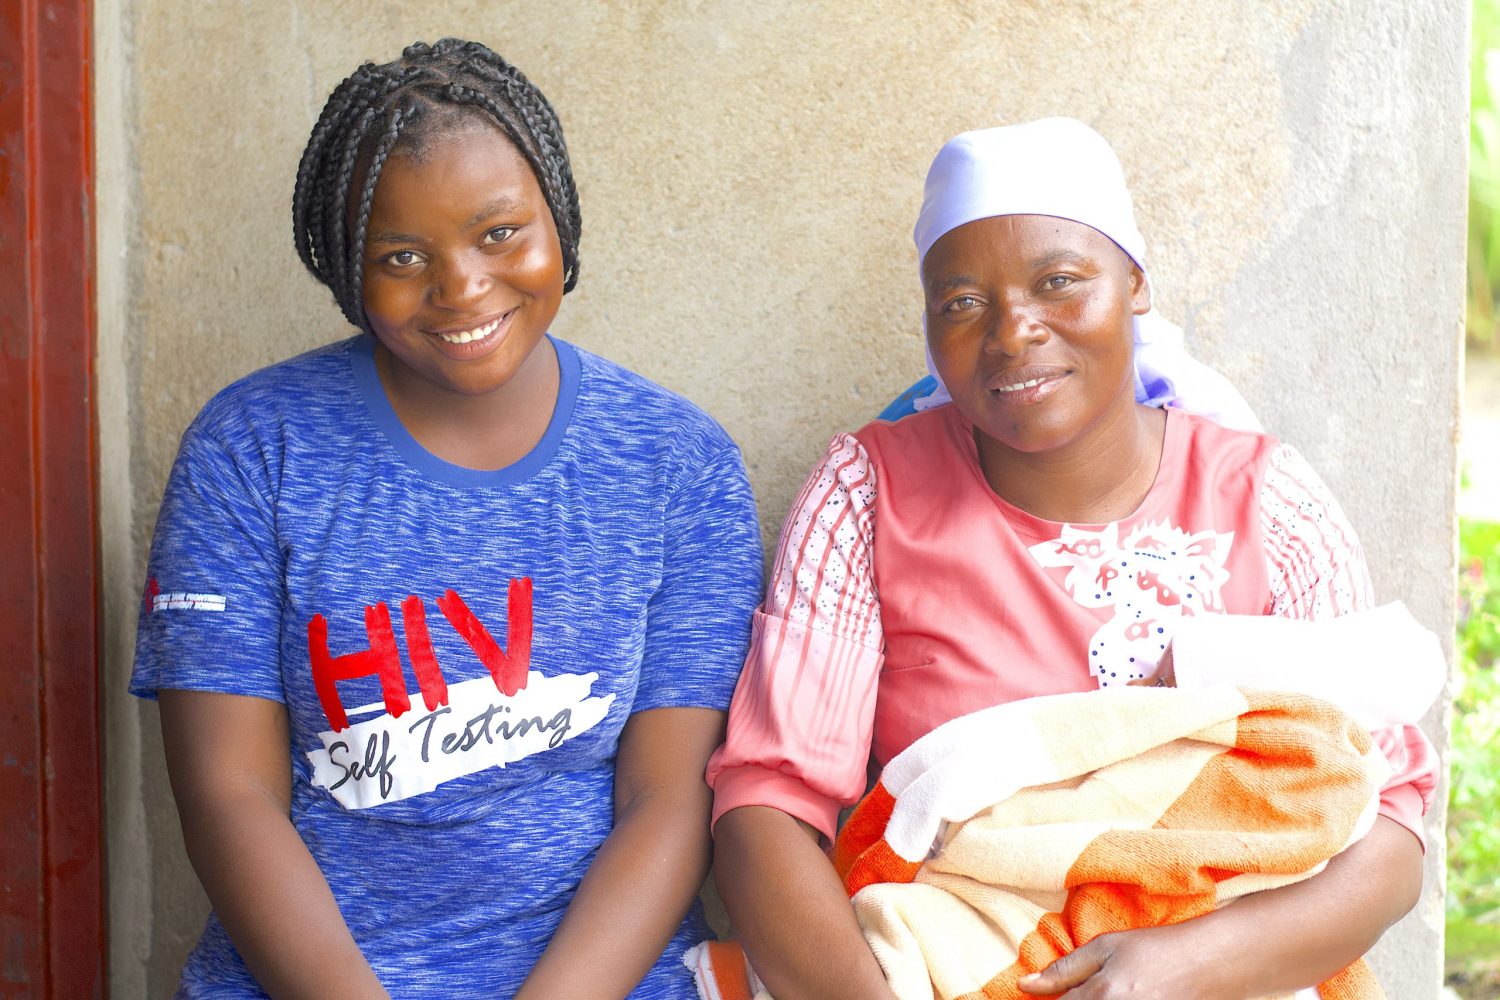 Marvellous Nzenza y su madre Jacqueline Nzenza a la derecha, está muy orgullosa de cómo su hija ha aprendido a cuidar de su bebé y a contribuir al Club de Madres Adolescentes como educadora entre igualesDorothy Meck/Afro Vision Trust.